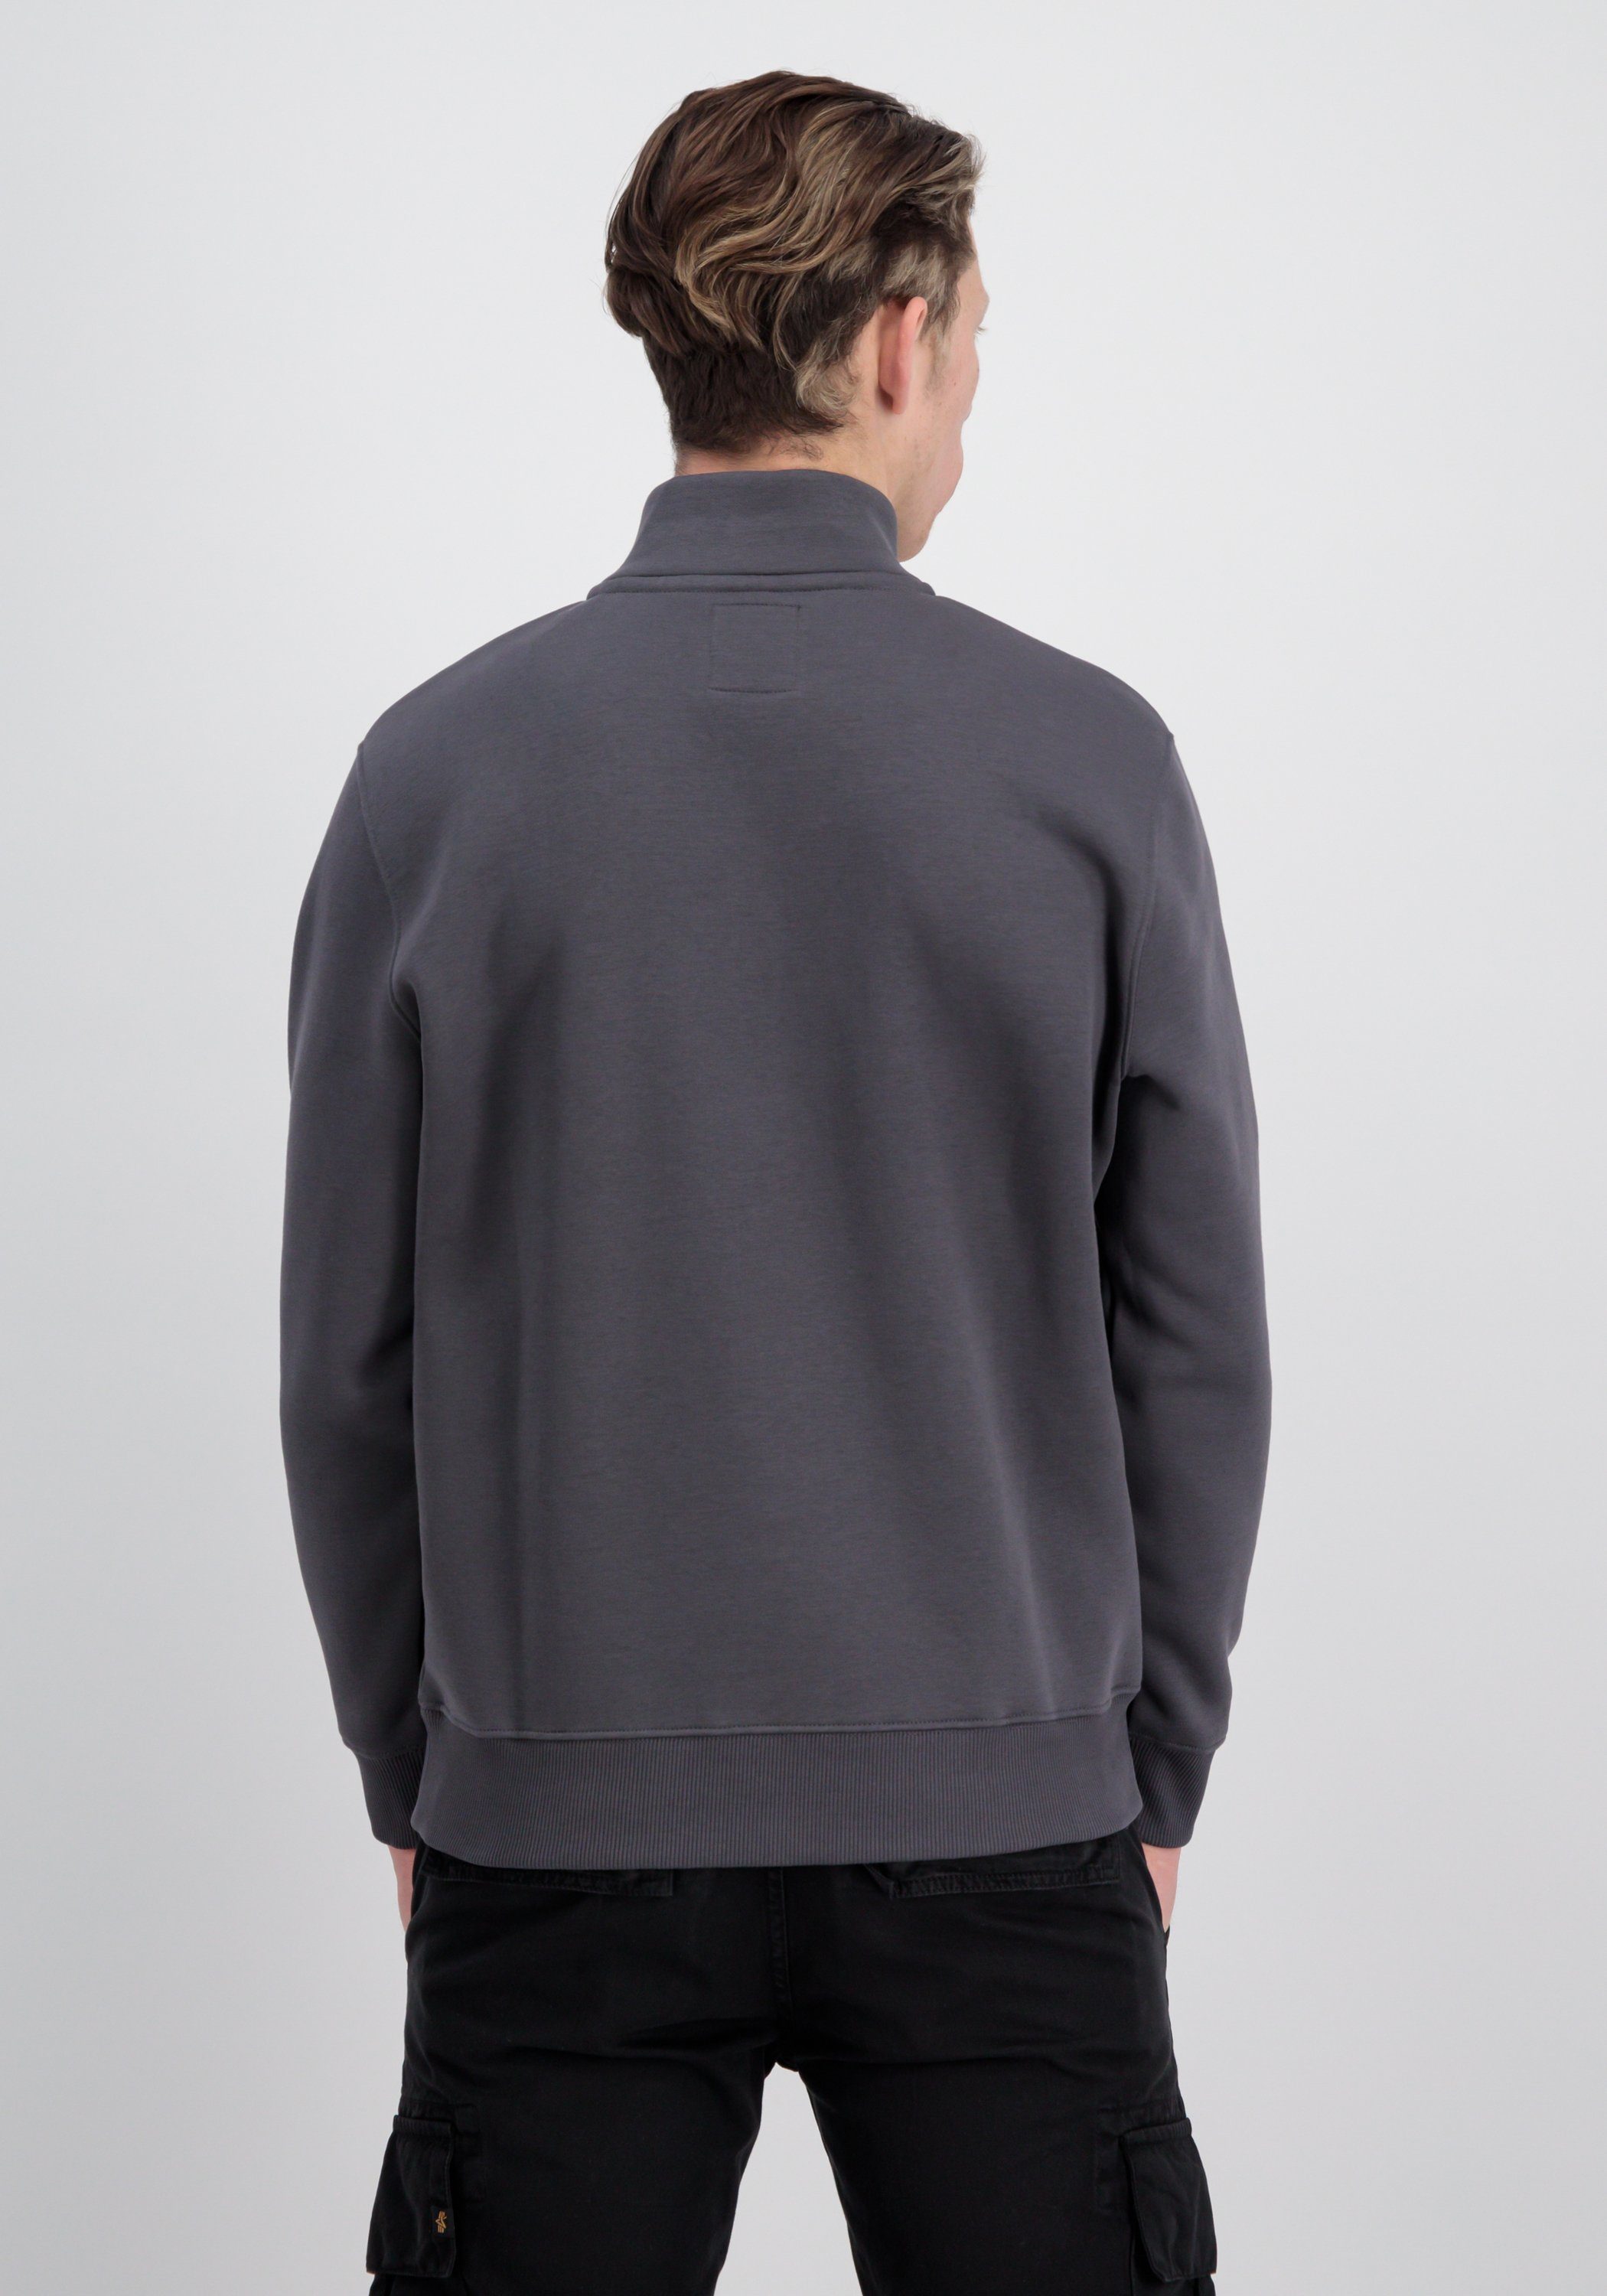 Sweater vintage Industries Industries Half - Alpha Sweatshirts grey SL Sweater Alpha Zip Men